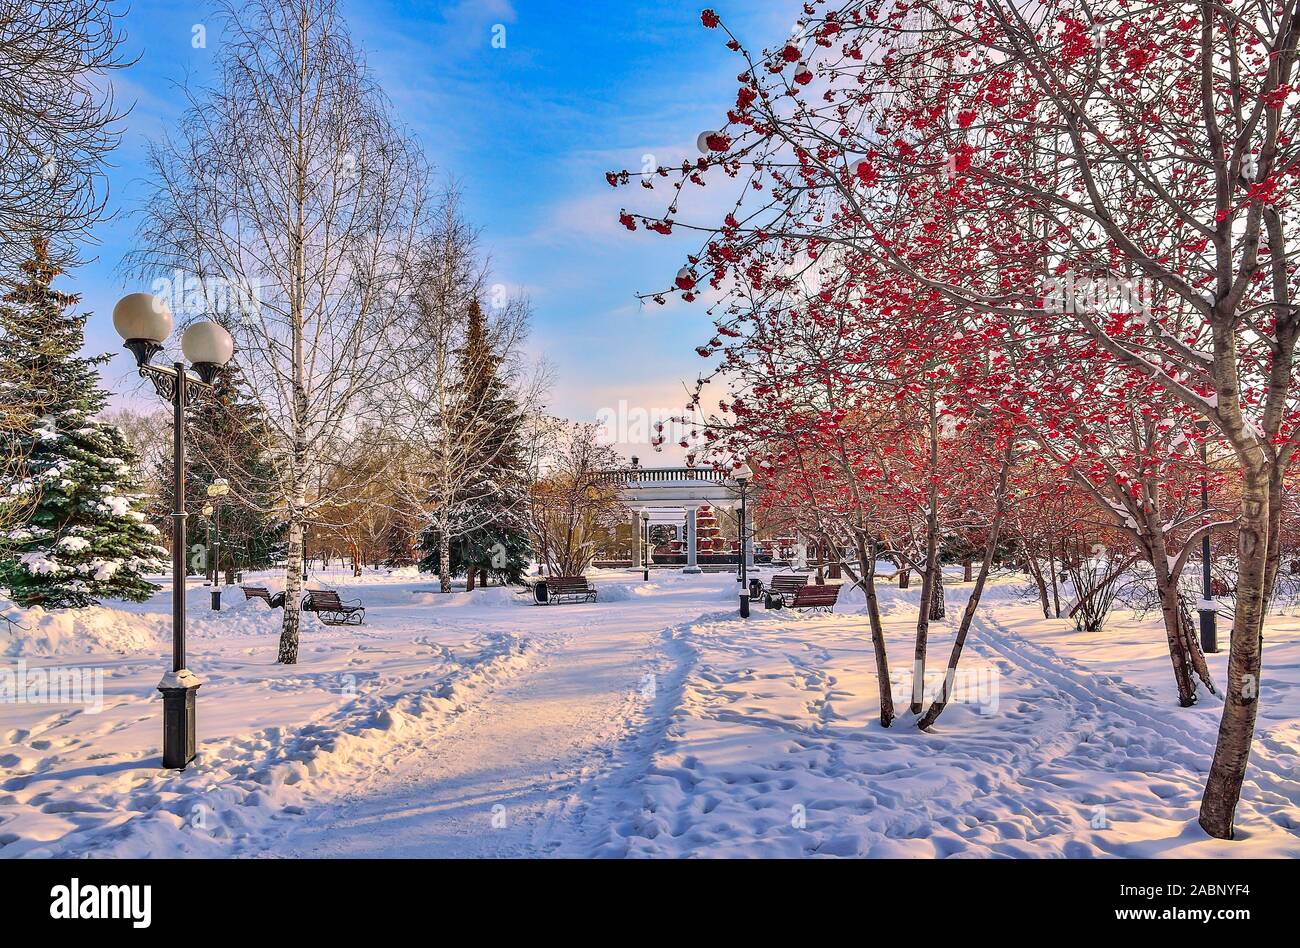 Soirée d'hiver coloré cityscape in snowy city park. La neige blanche couverte de sapins verts et arbres rowan avec baies rouge vif. Une beauté Banque D'Images